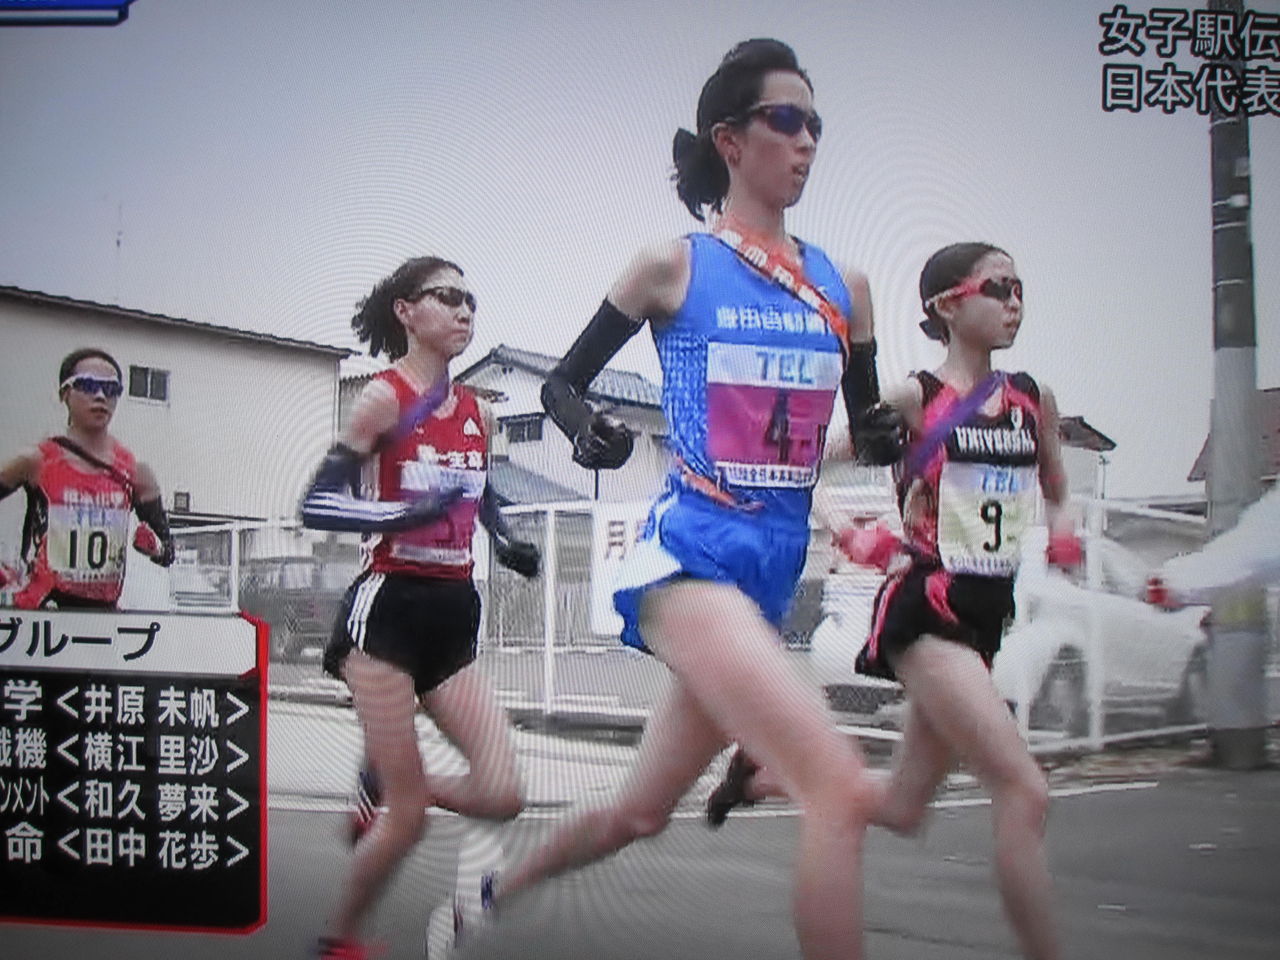 実業団女子駅伝 のミカタ 横江里沙の走りに大注目 豊大先生流 陸上競技のミカタ